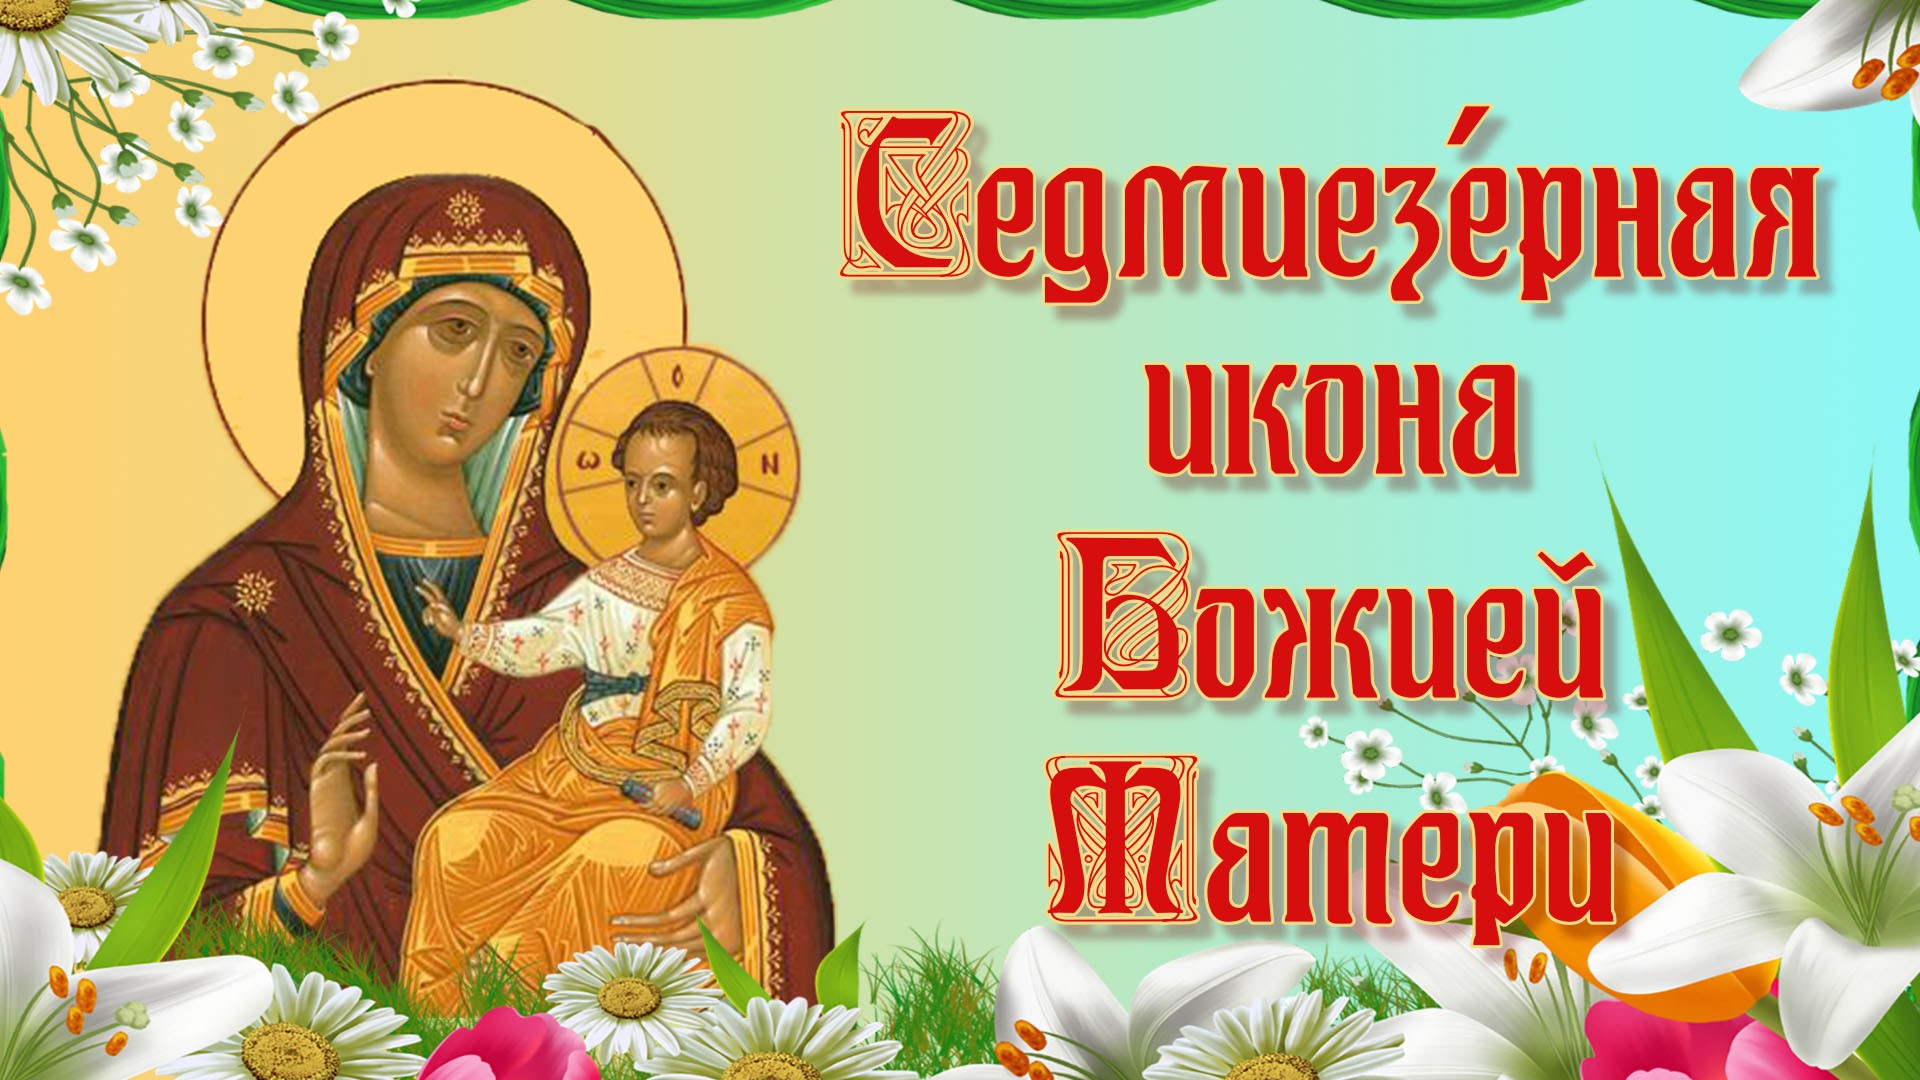 4 Июля день Казанской Божьей матери